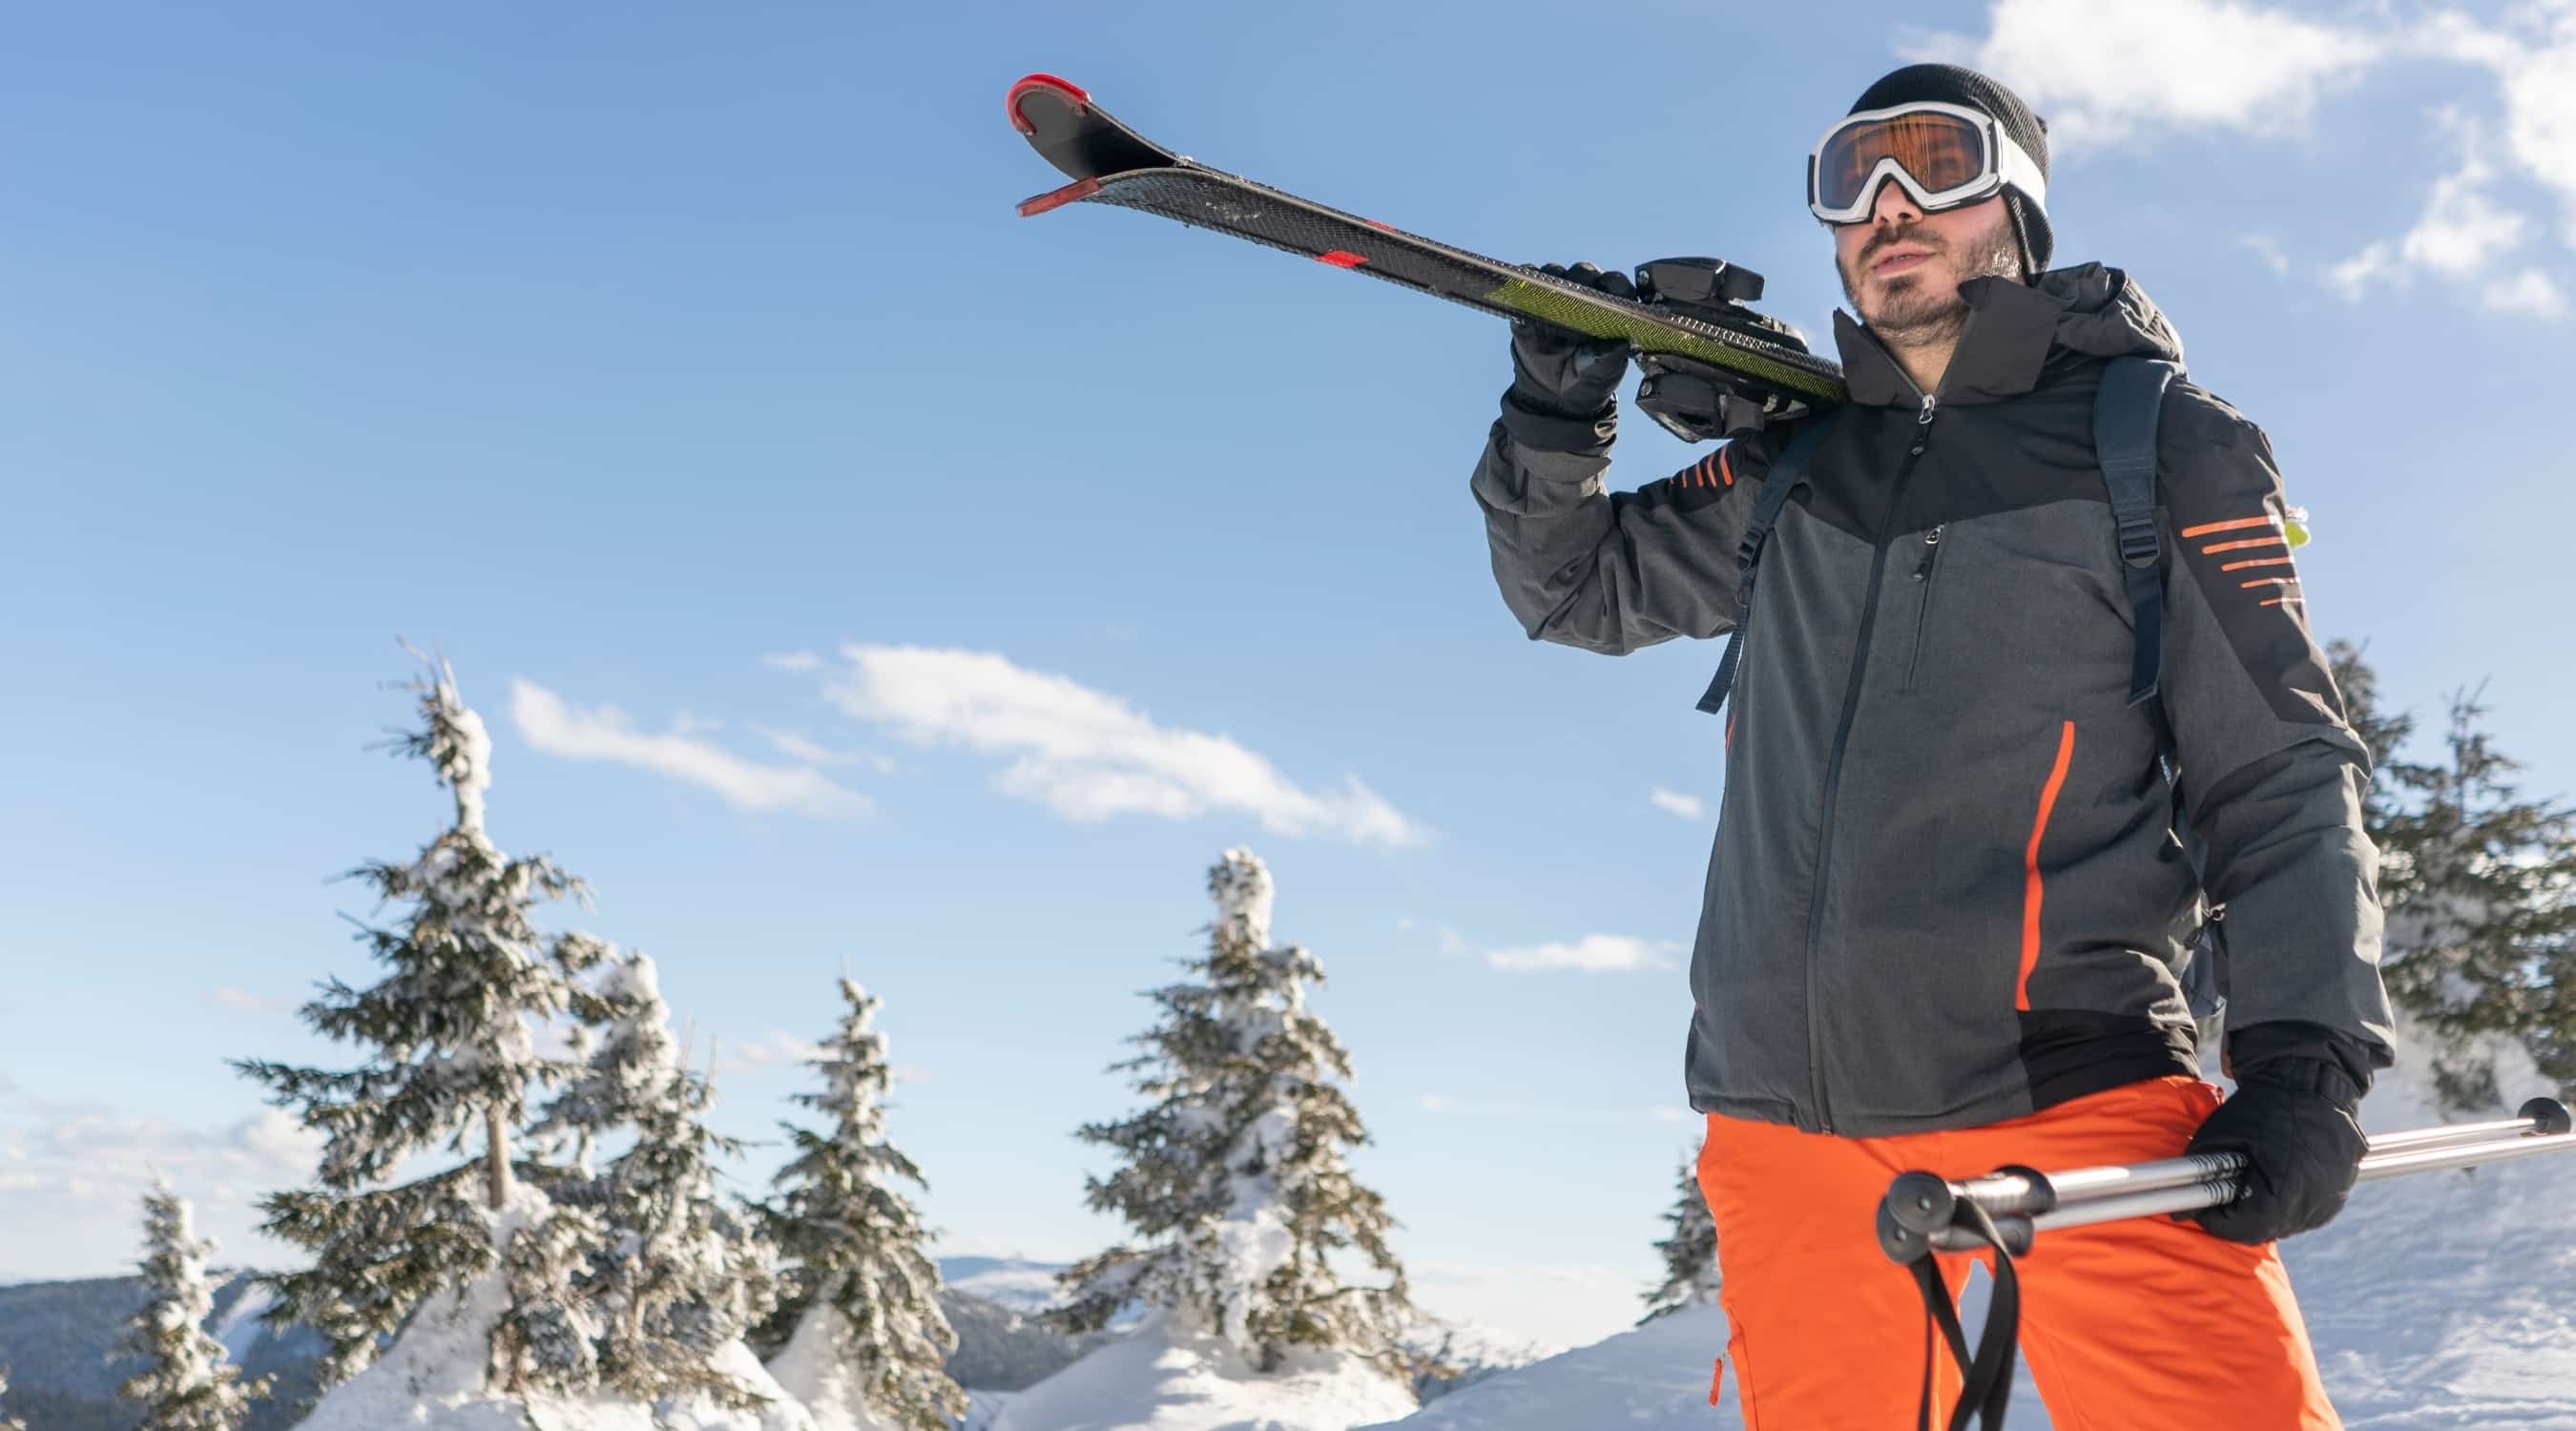 Skijacken Herren - Welche Jacke was für Sie benötigen